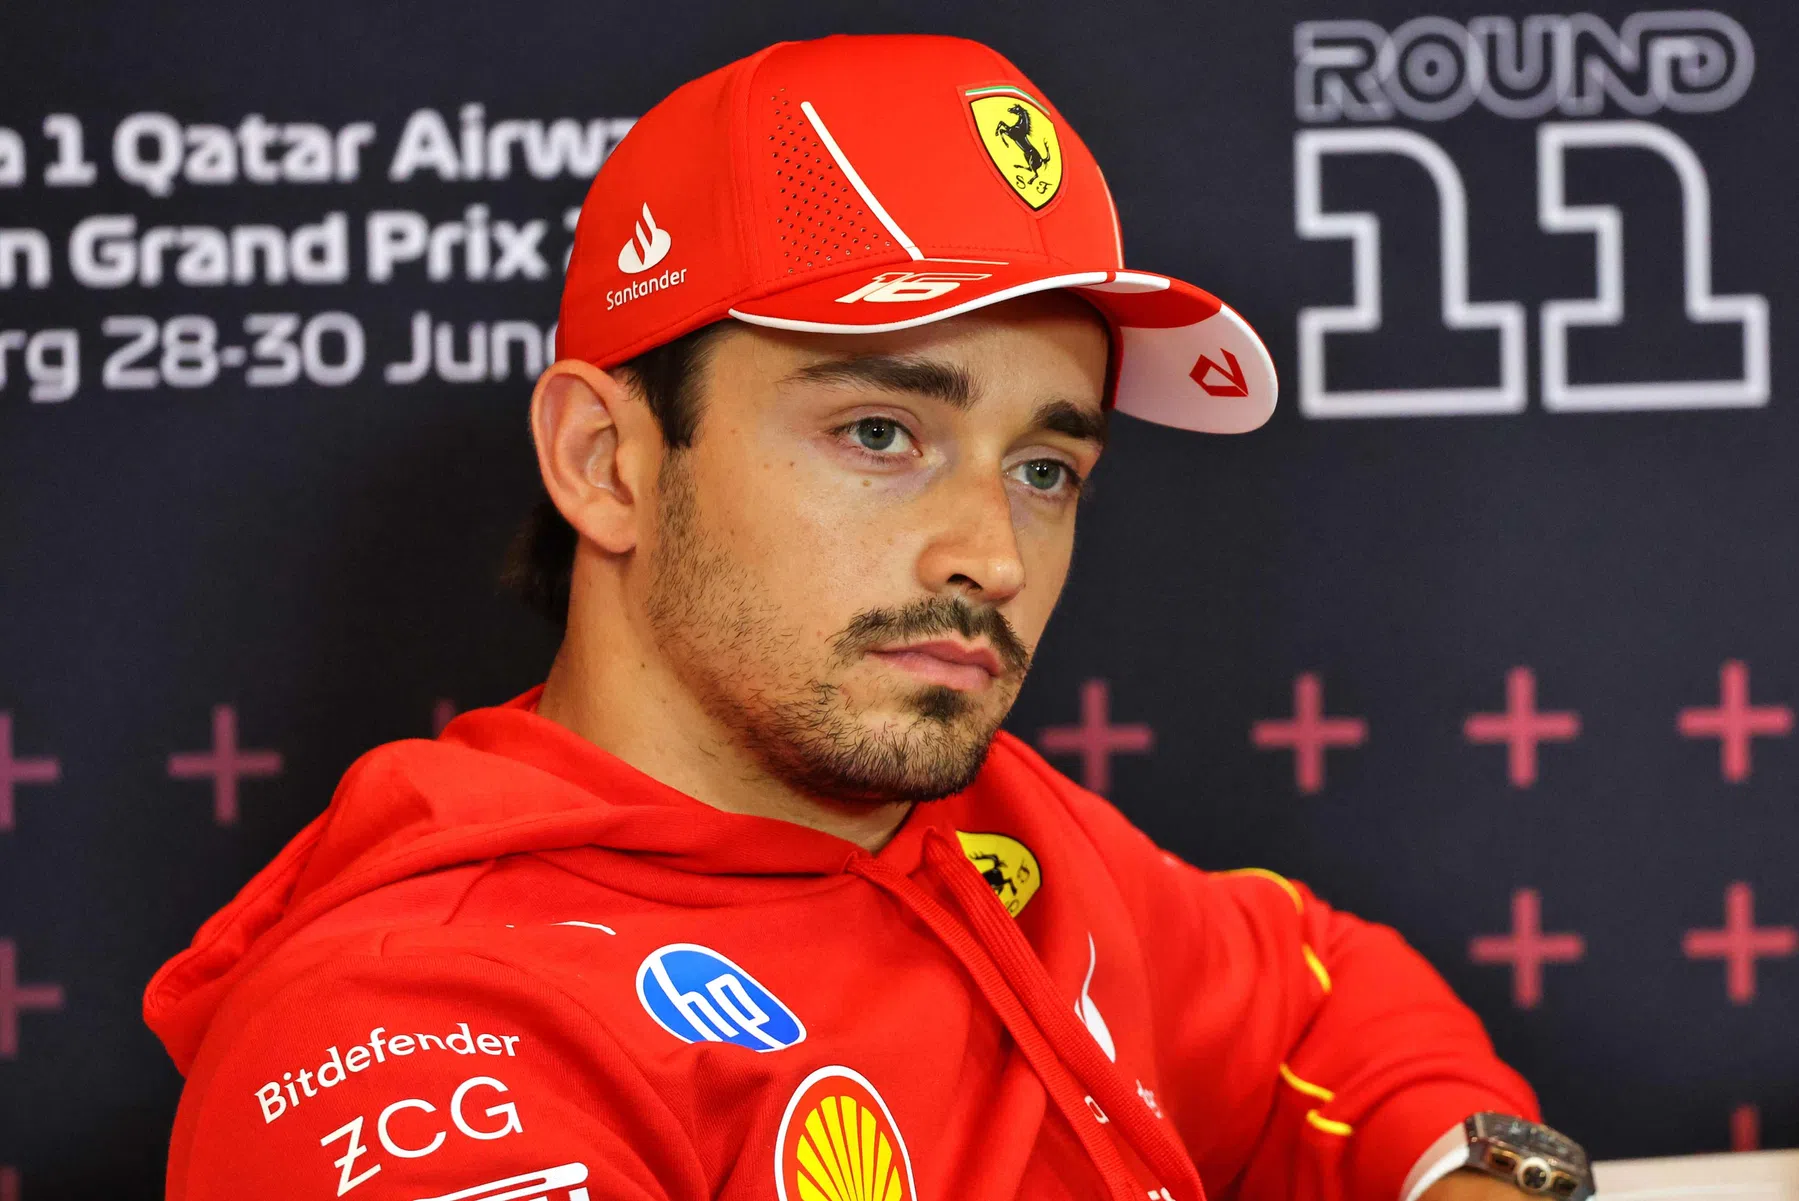 Leclerc blickt pessimistisch nach Silverstone